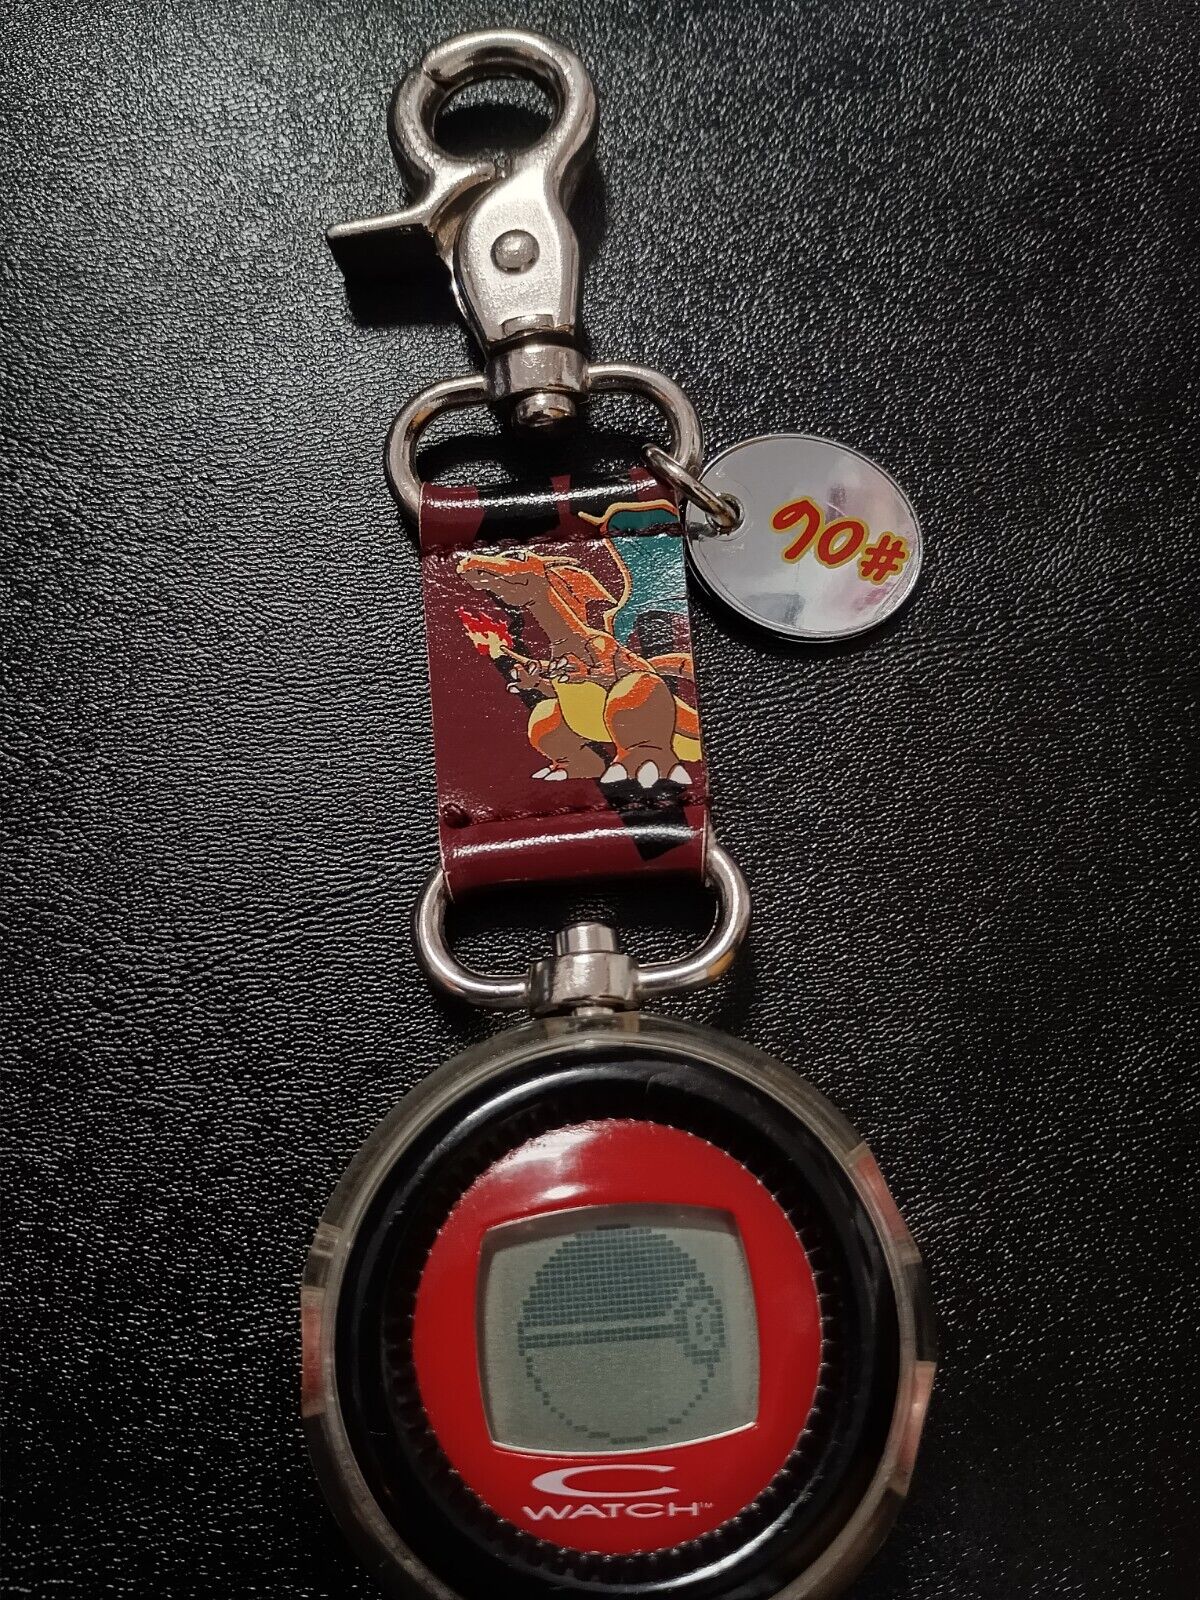 VERY RARE 1998 Pokémon C Watch Clip Charizard #6- Animated Pocket Watch - Works